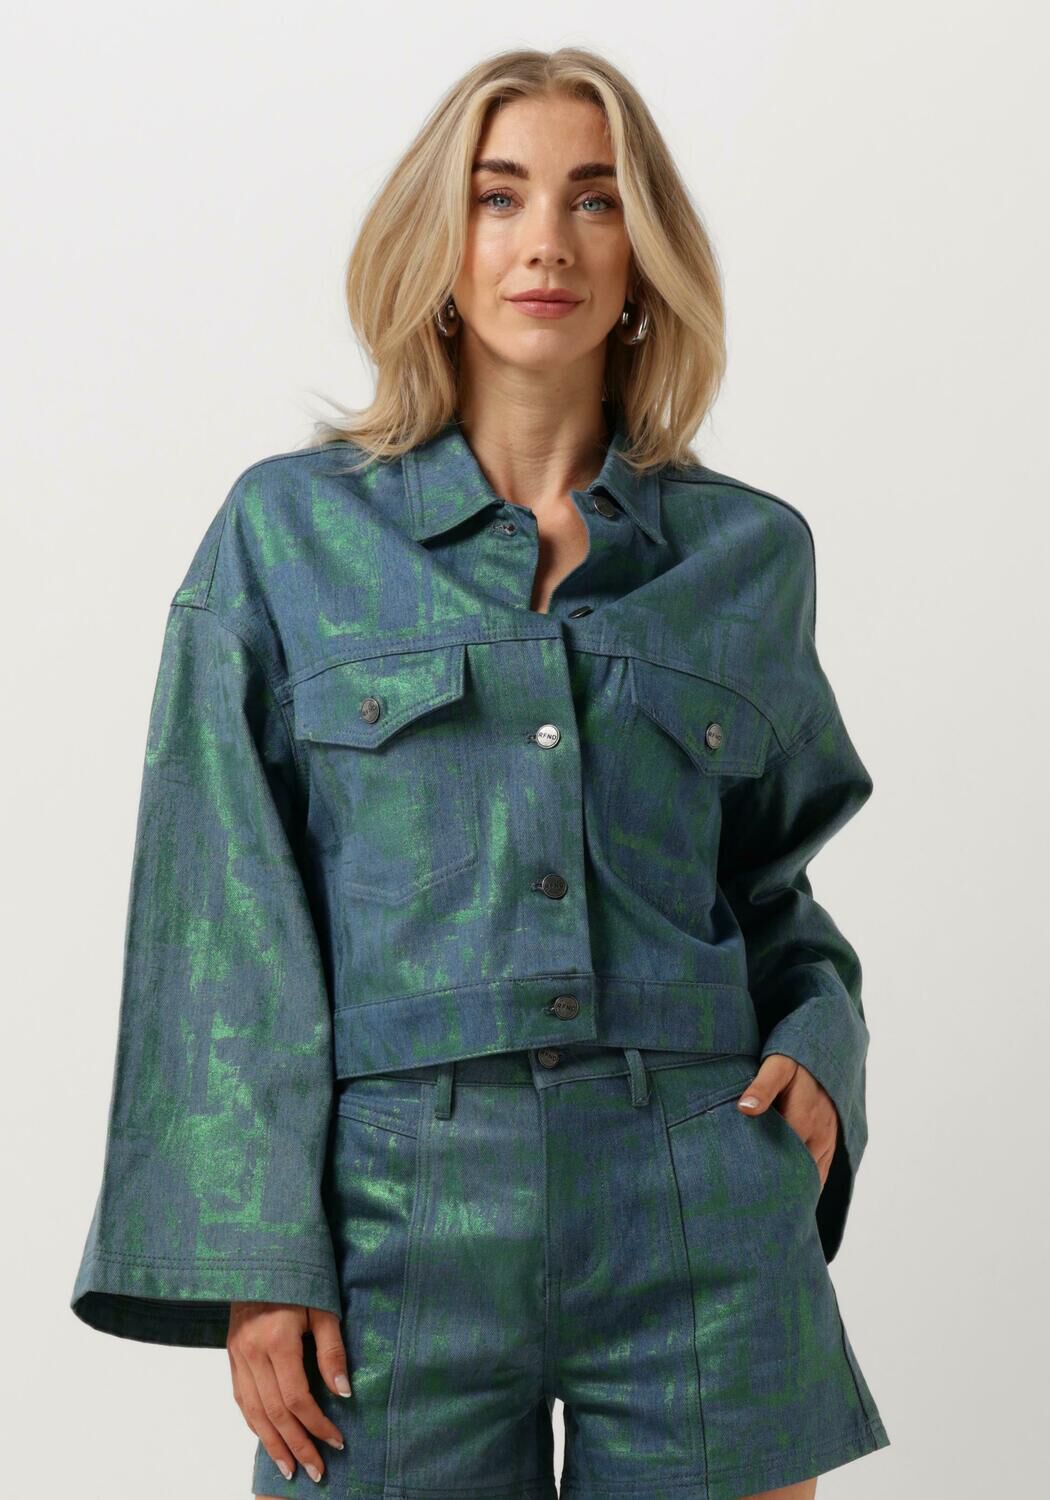 Refined Department metallic jasje Pip met all over print blauw groen